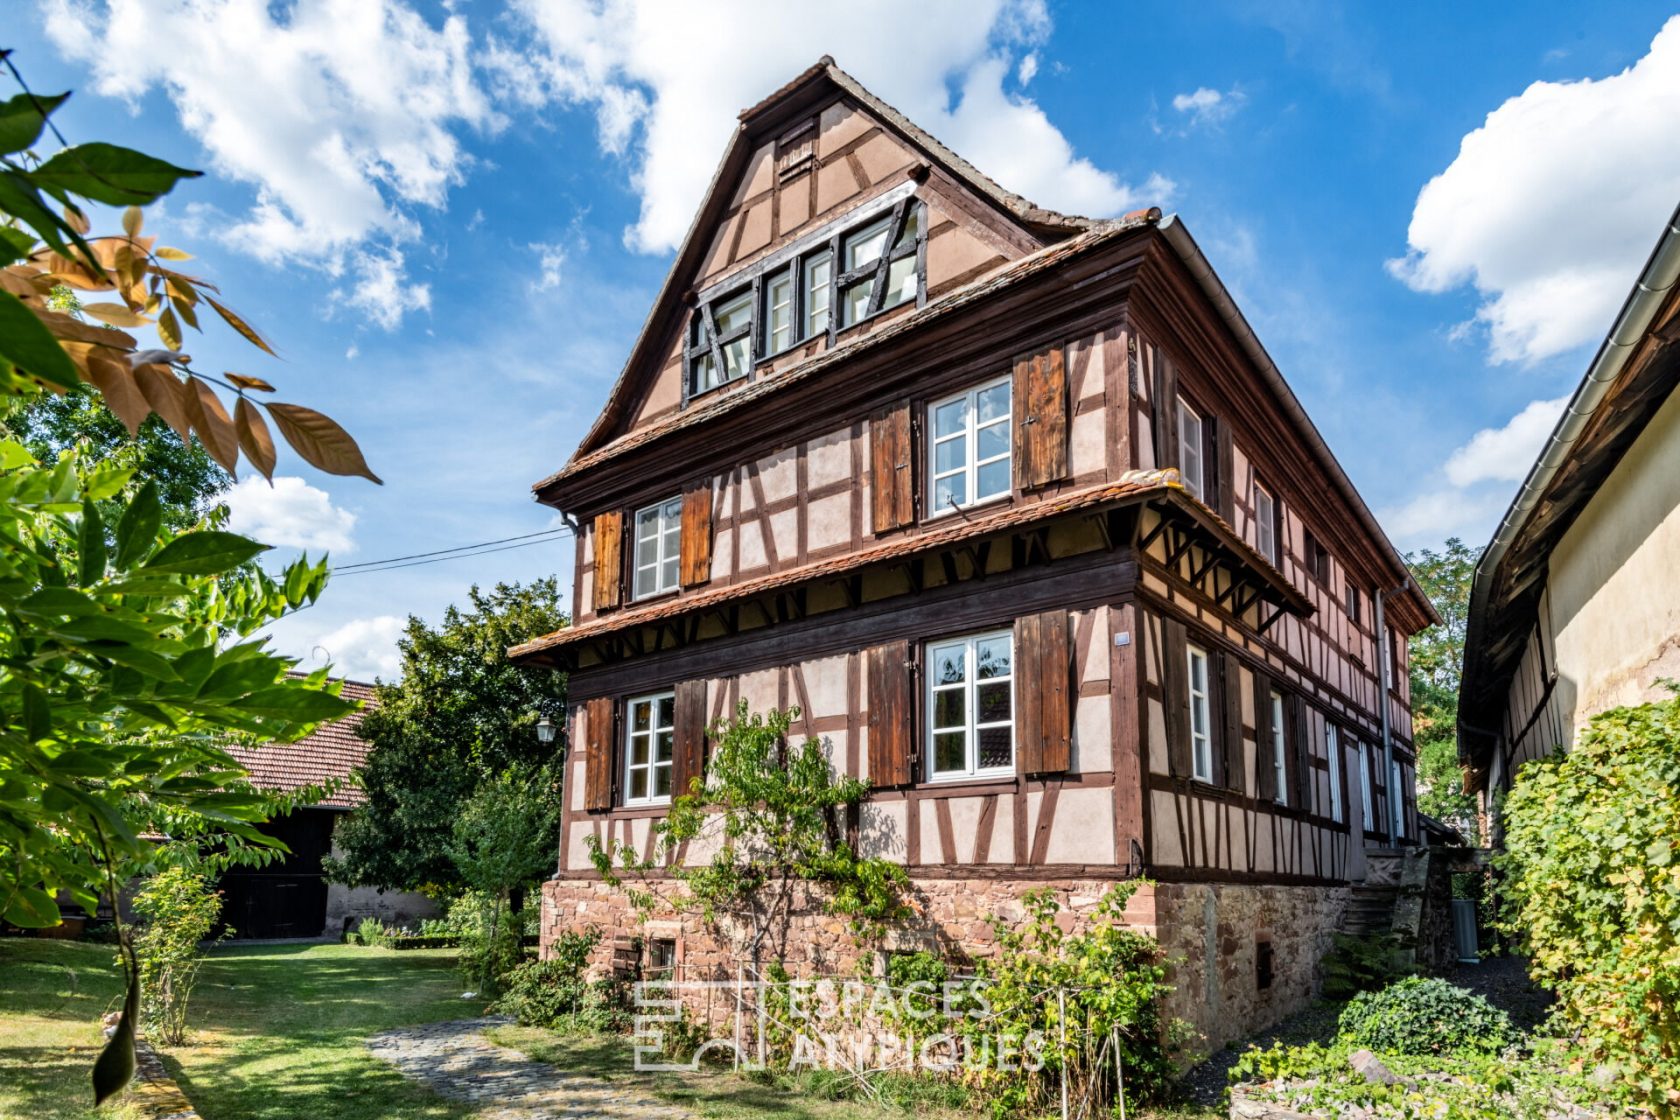 Maison alsacienne et son jardin en cœur de ville